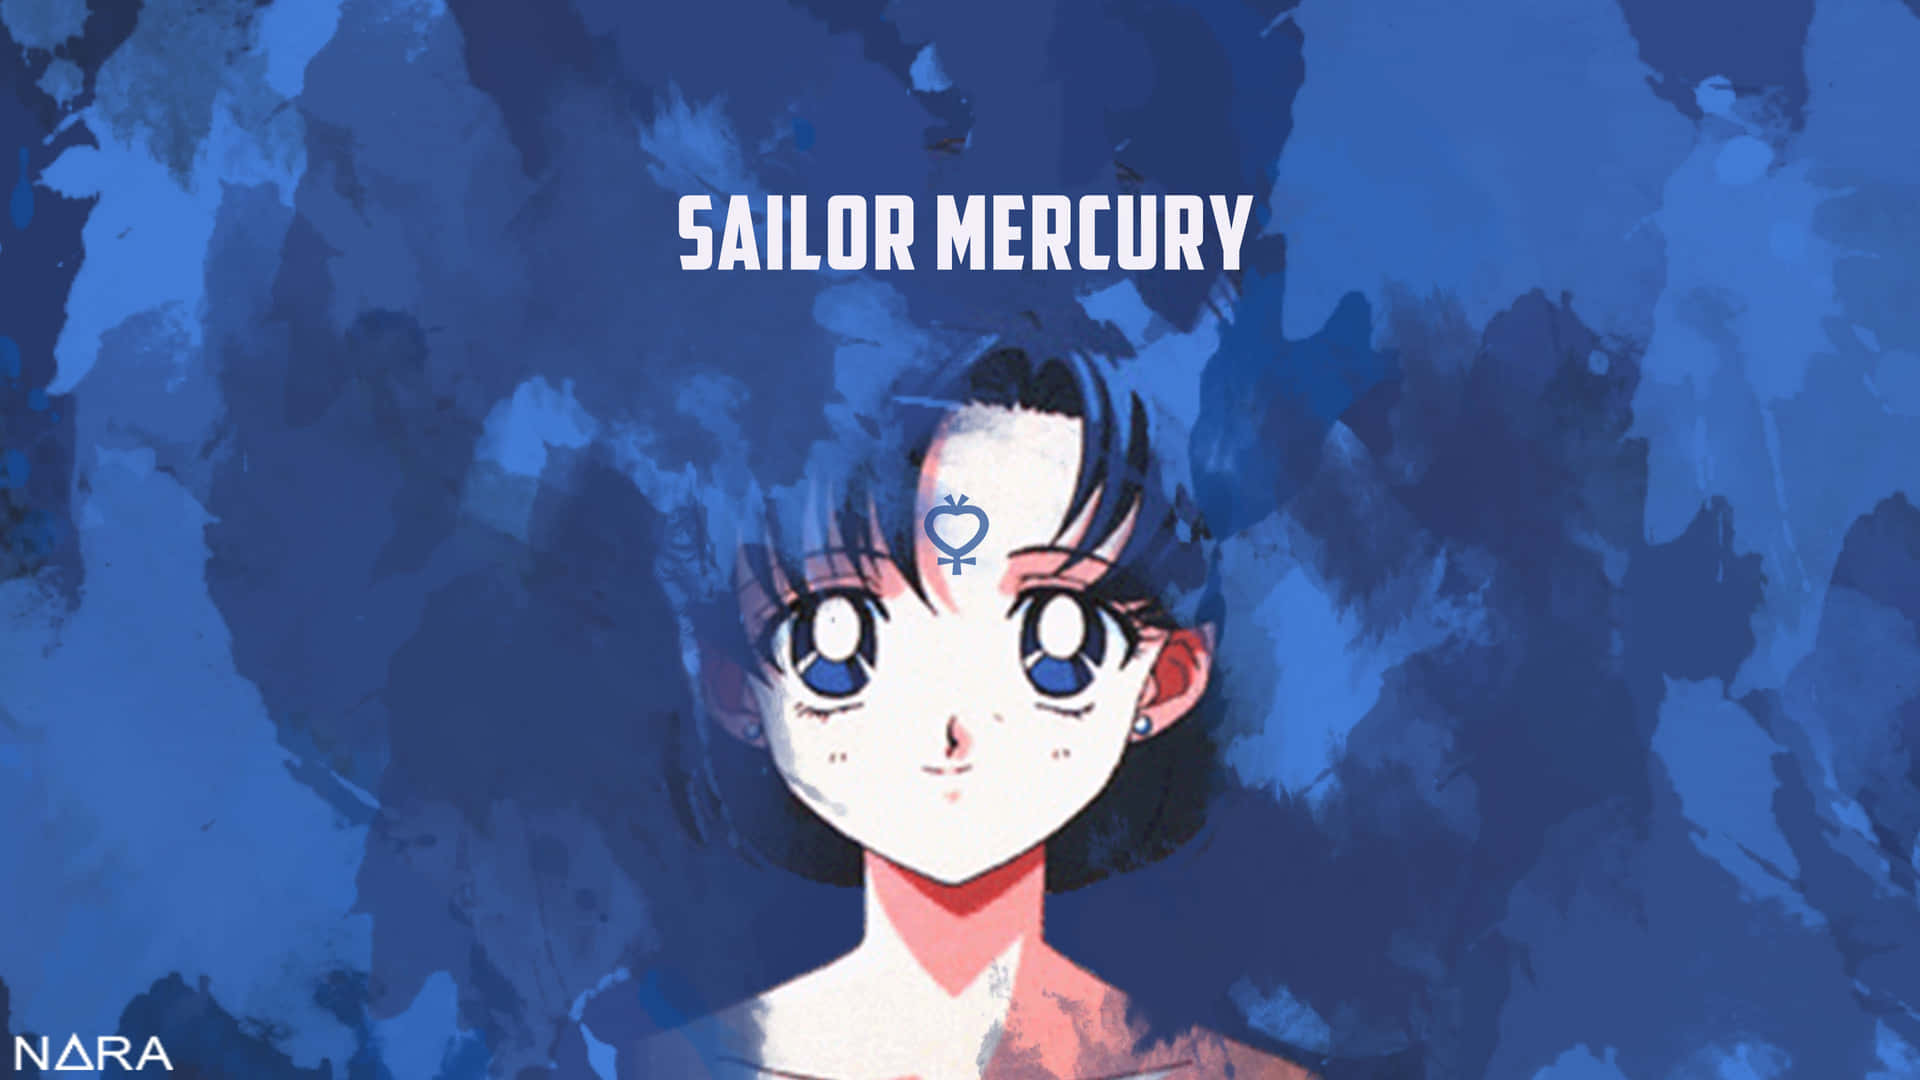 Sailormercury Luchando Por La Justicia. Fondo de pantalla